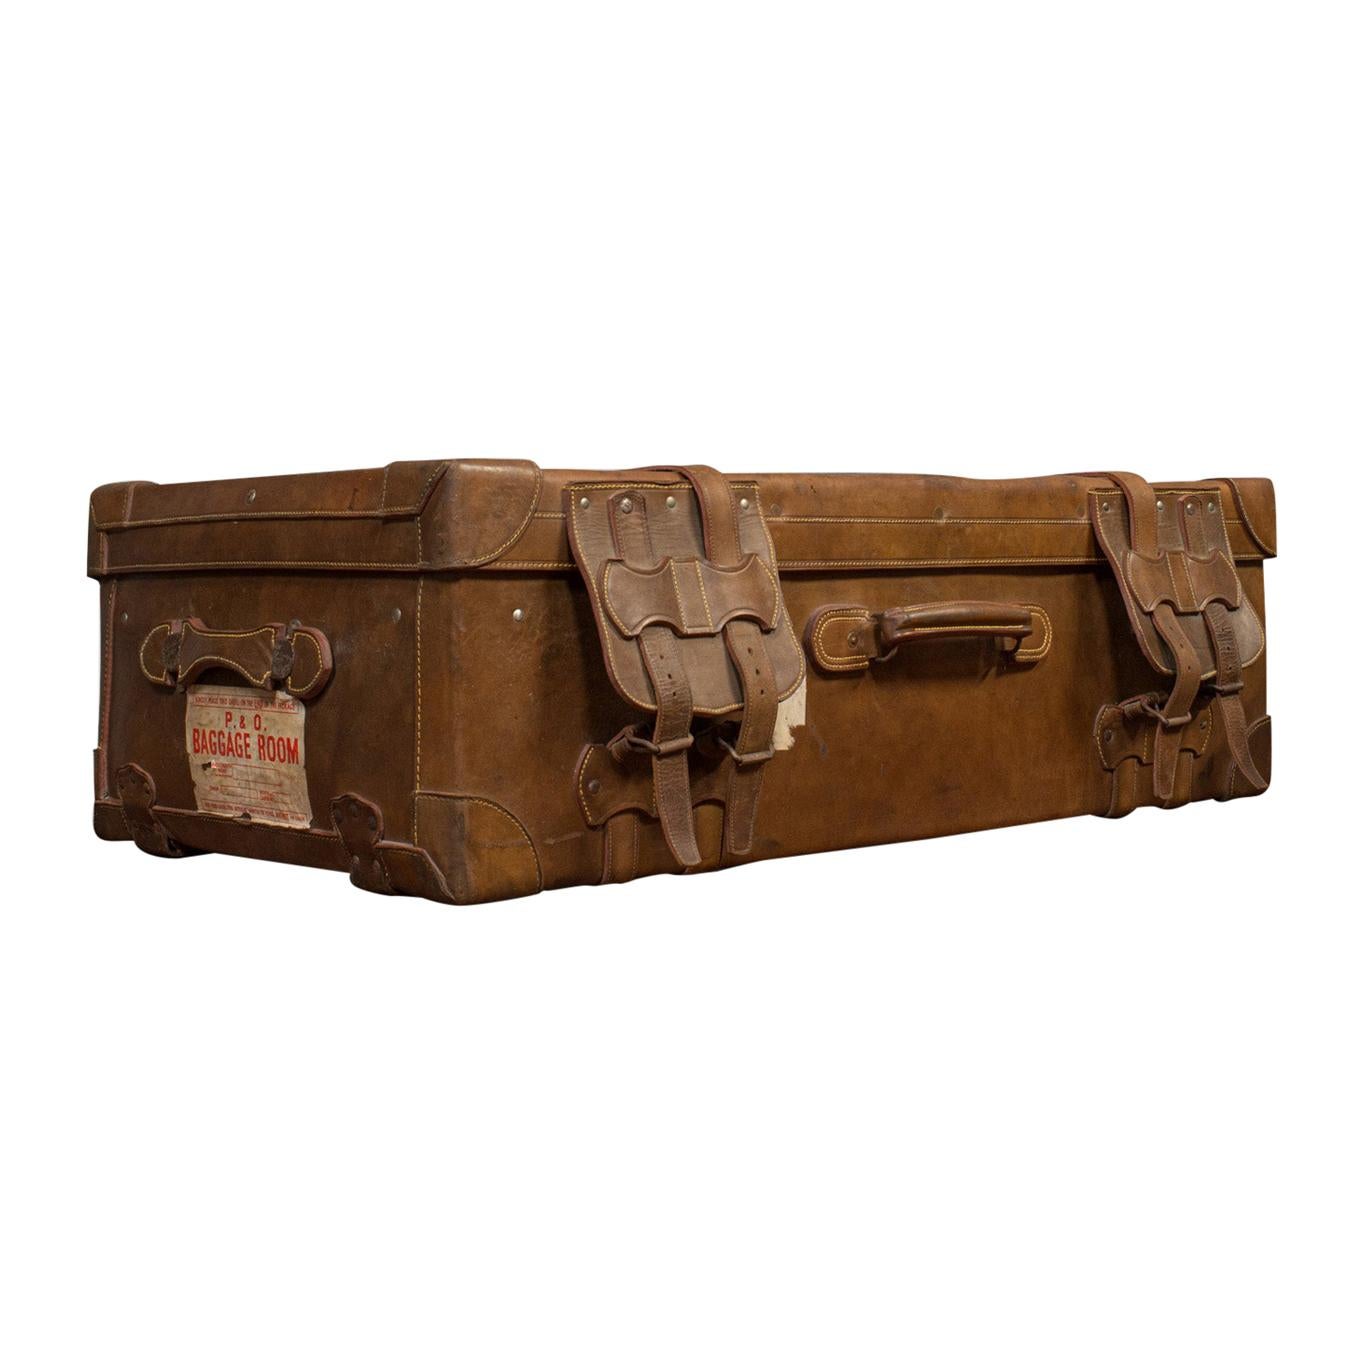 Très grande valise de voyage ancienne:: anglaise:: en cuir:: à vapeur:: malle d'expédition